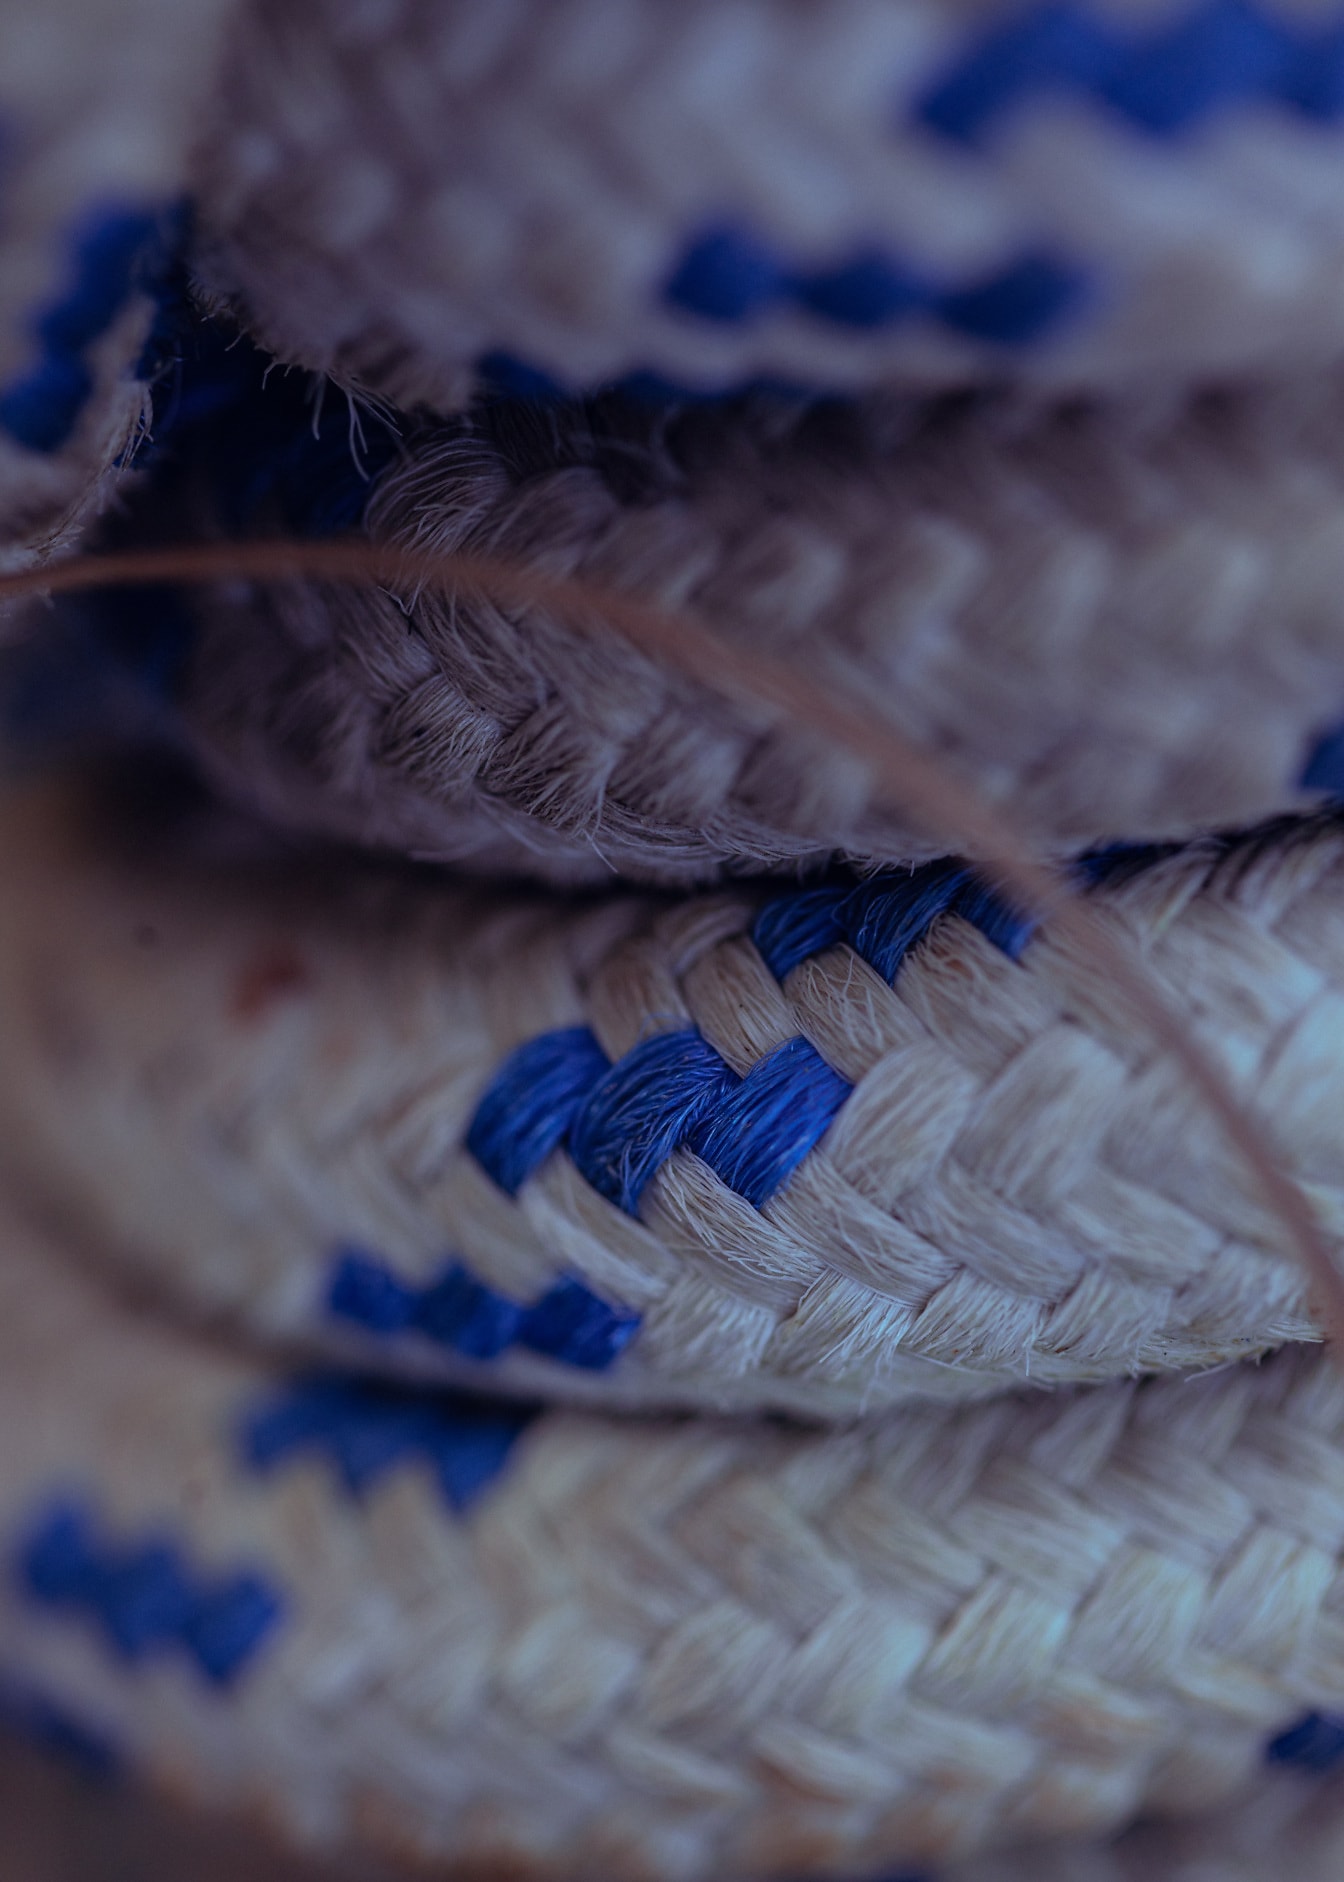 Close-up tali nilon dengan serat putih dan biru tua